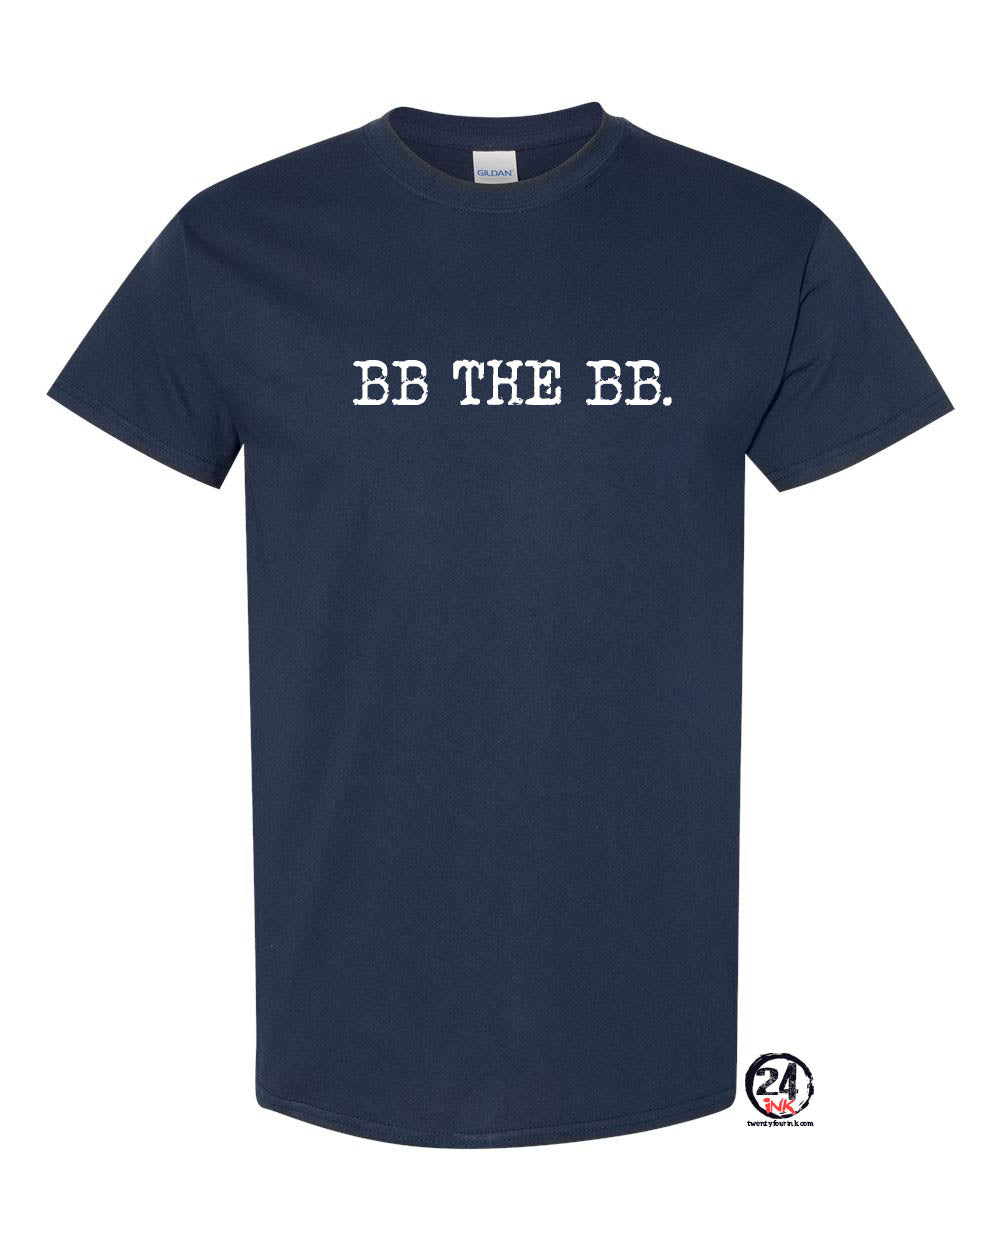 BB the BB t-shirt